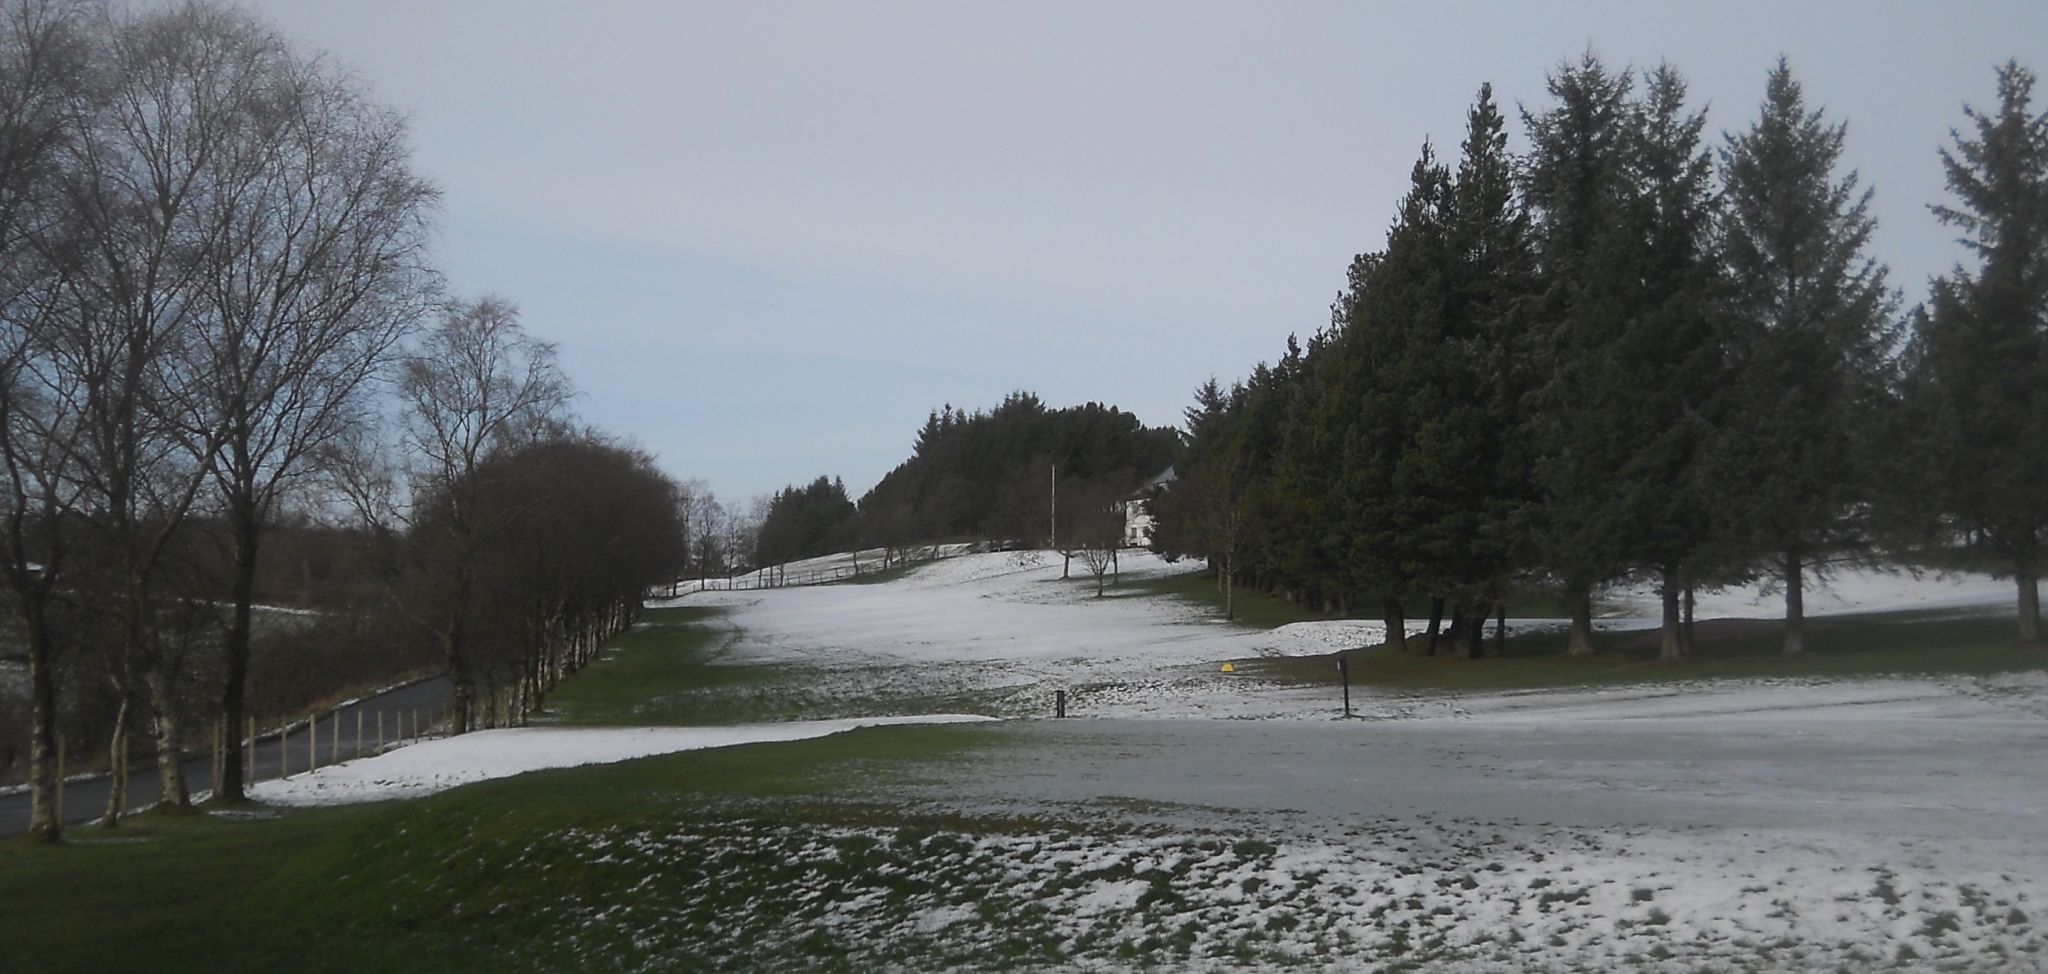 Windyhill Golf Course in Bearsden